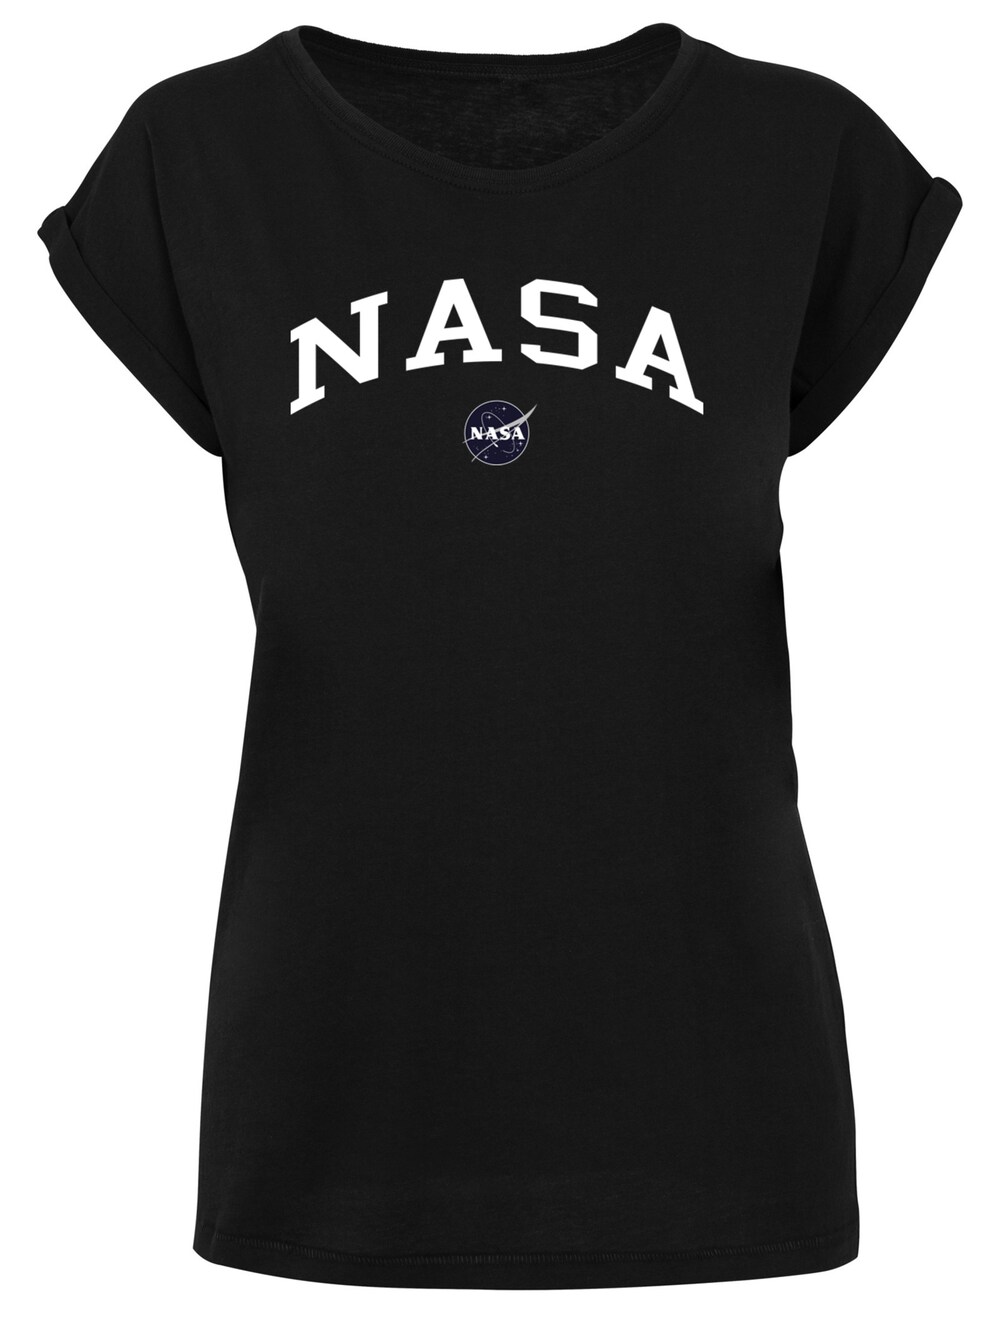 Рубашка F4Nt4Stic NASA, черный цена и фото